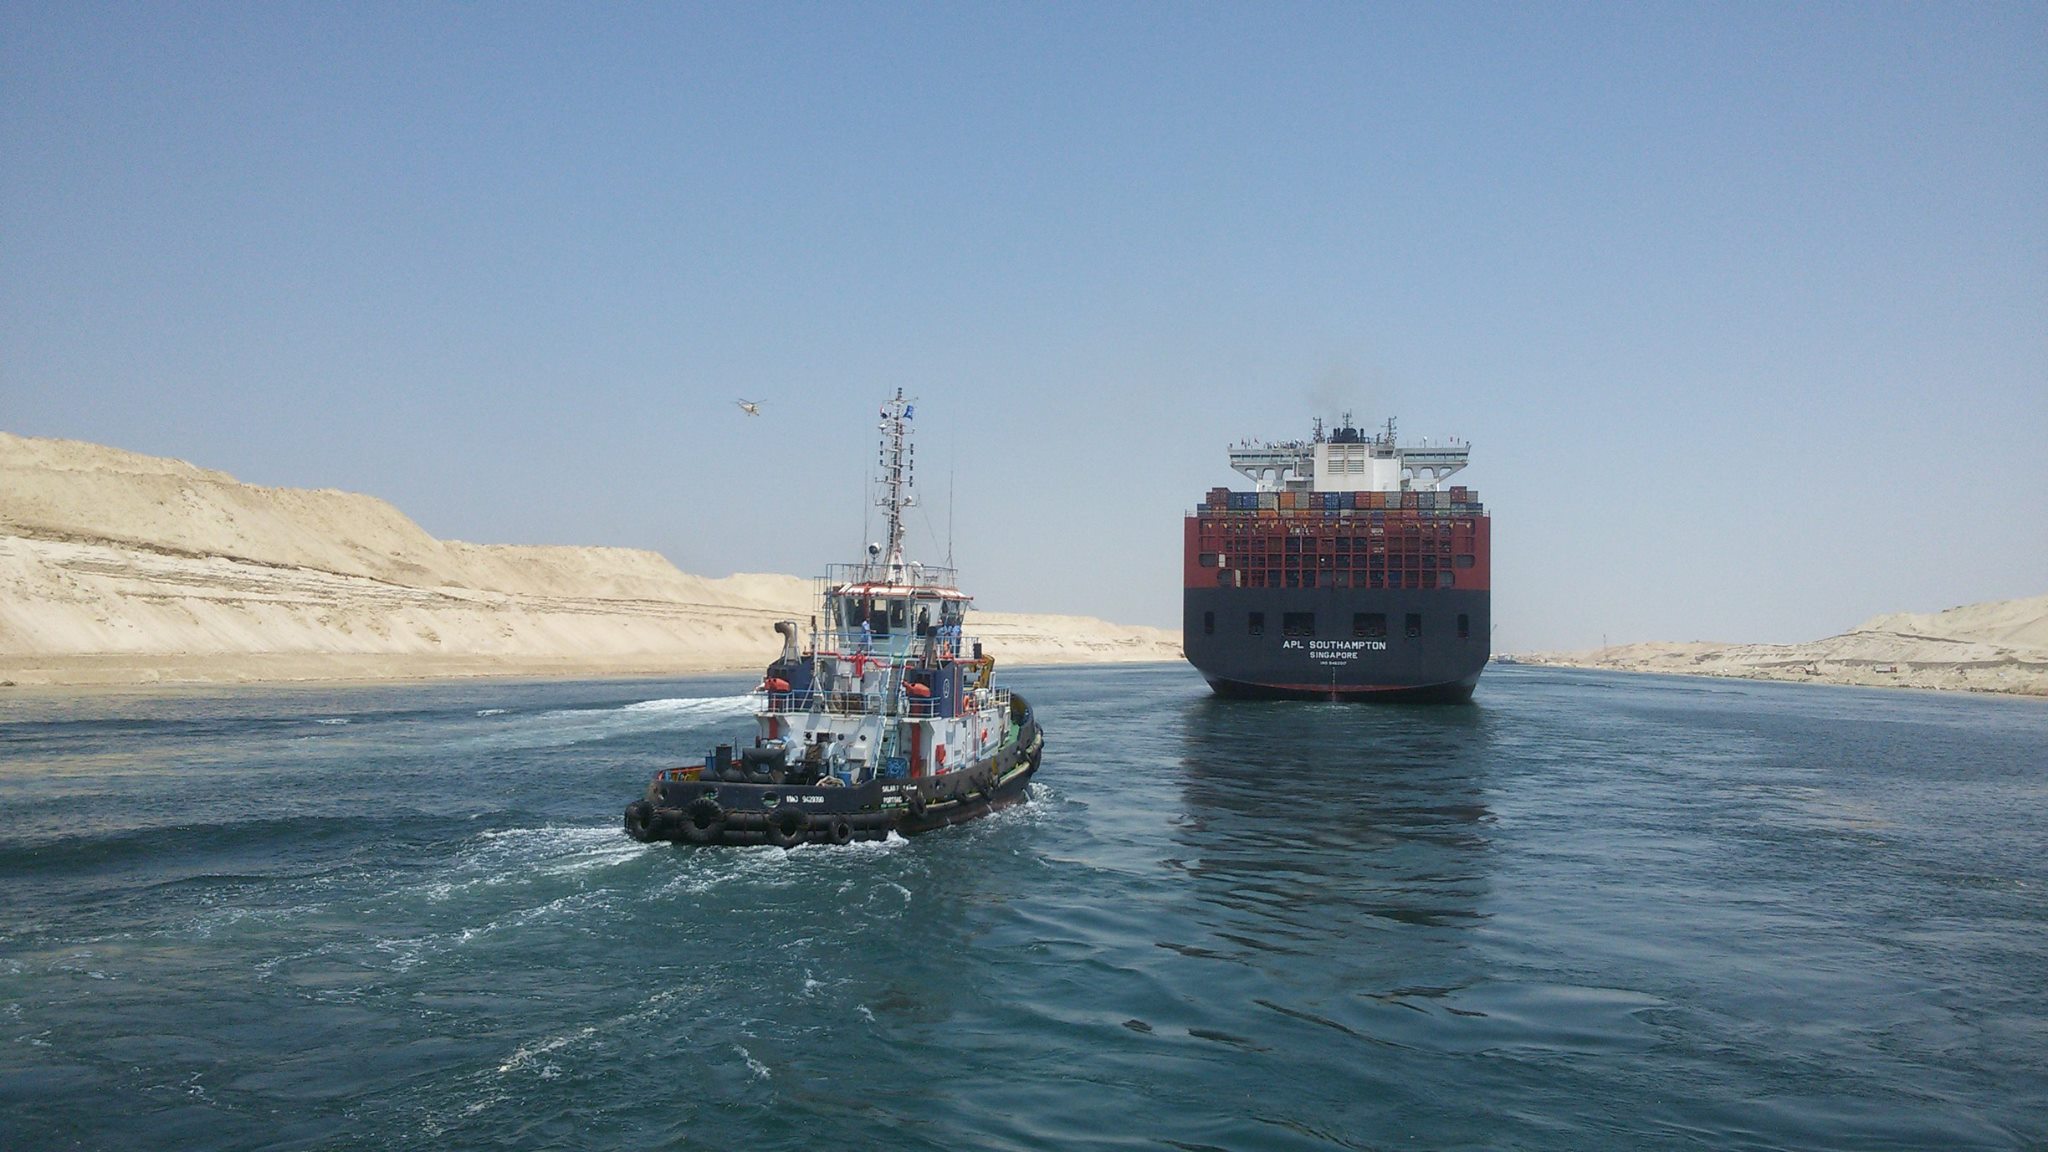   هيئة قناة السويس تنفي تعرض طاقم سفينة لمضايقات أثناء عبور القناة